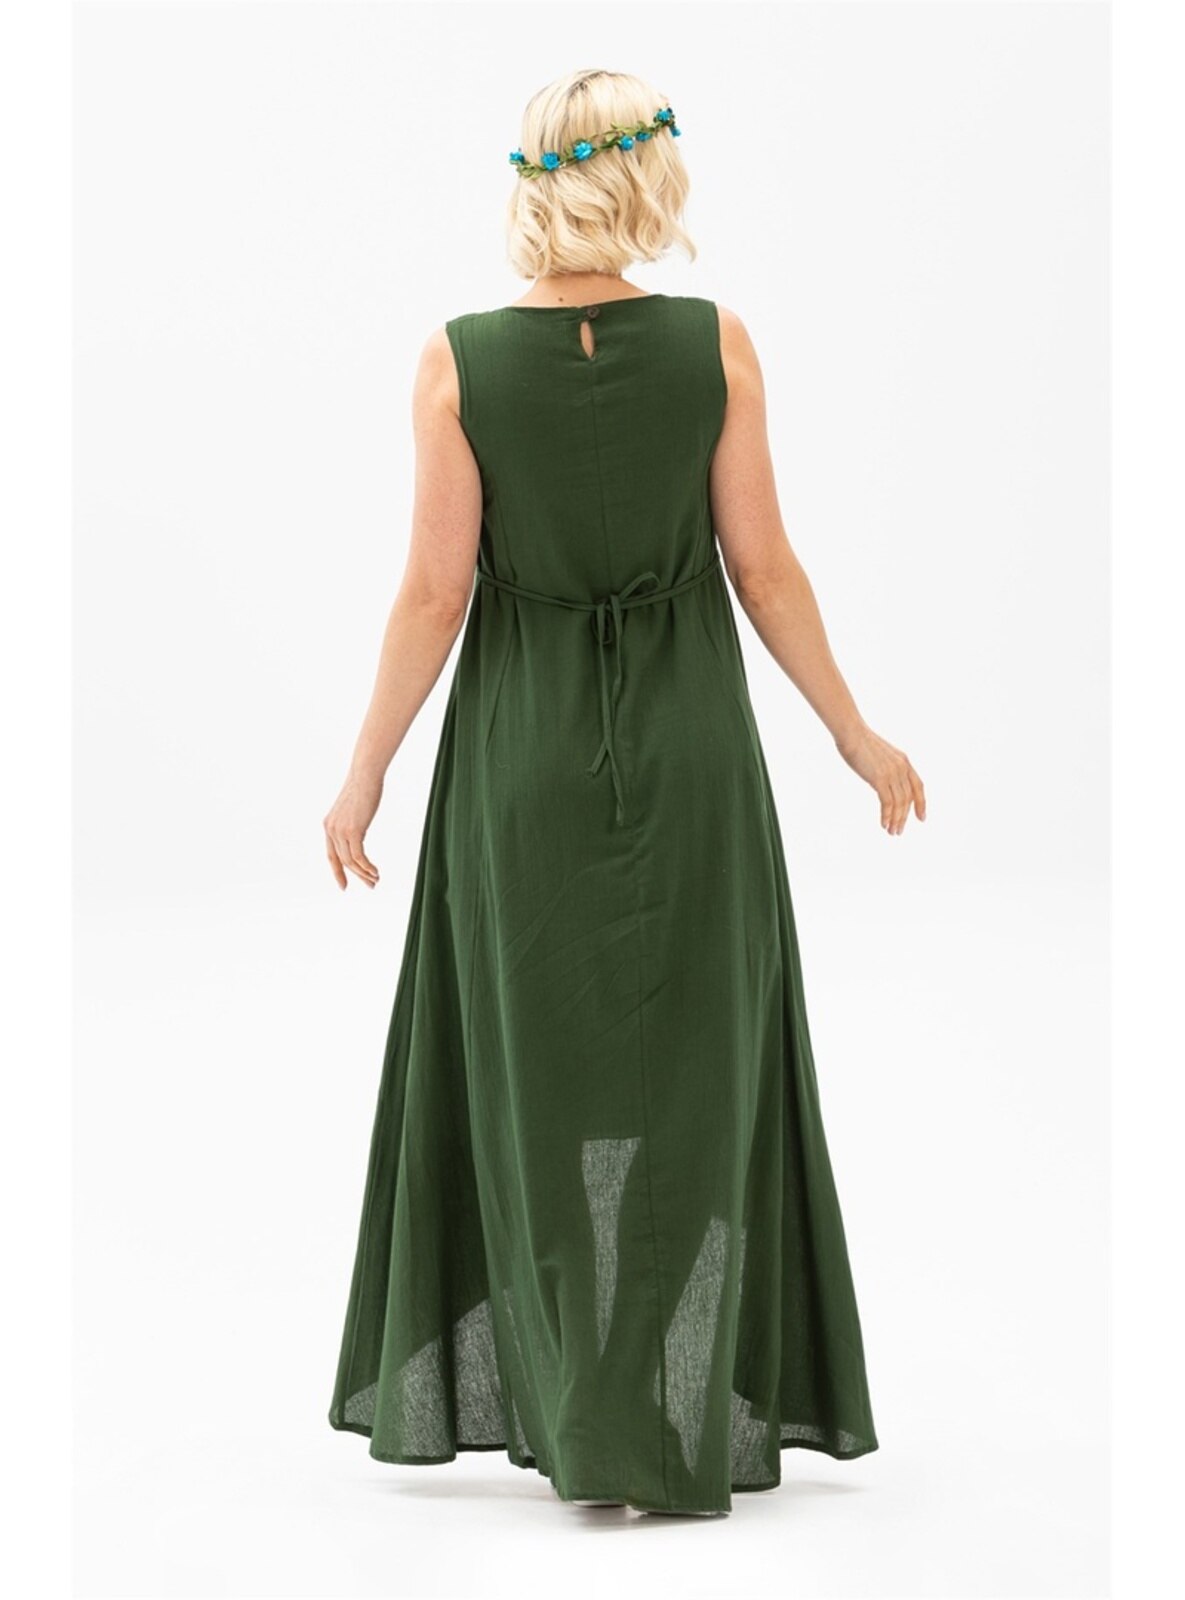 Green - Crew neck - Modest Dress